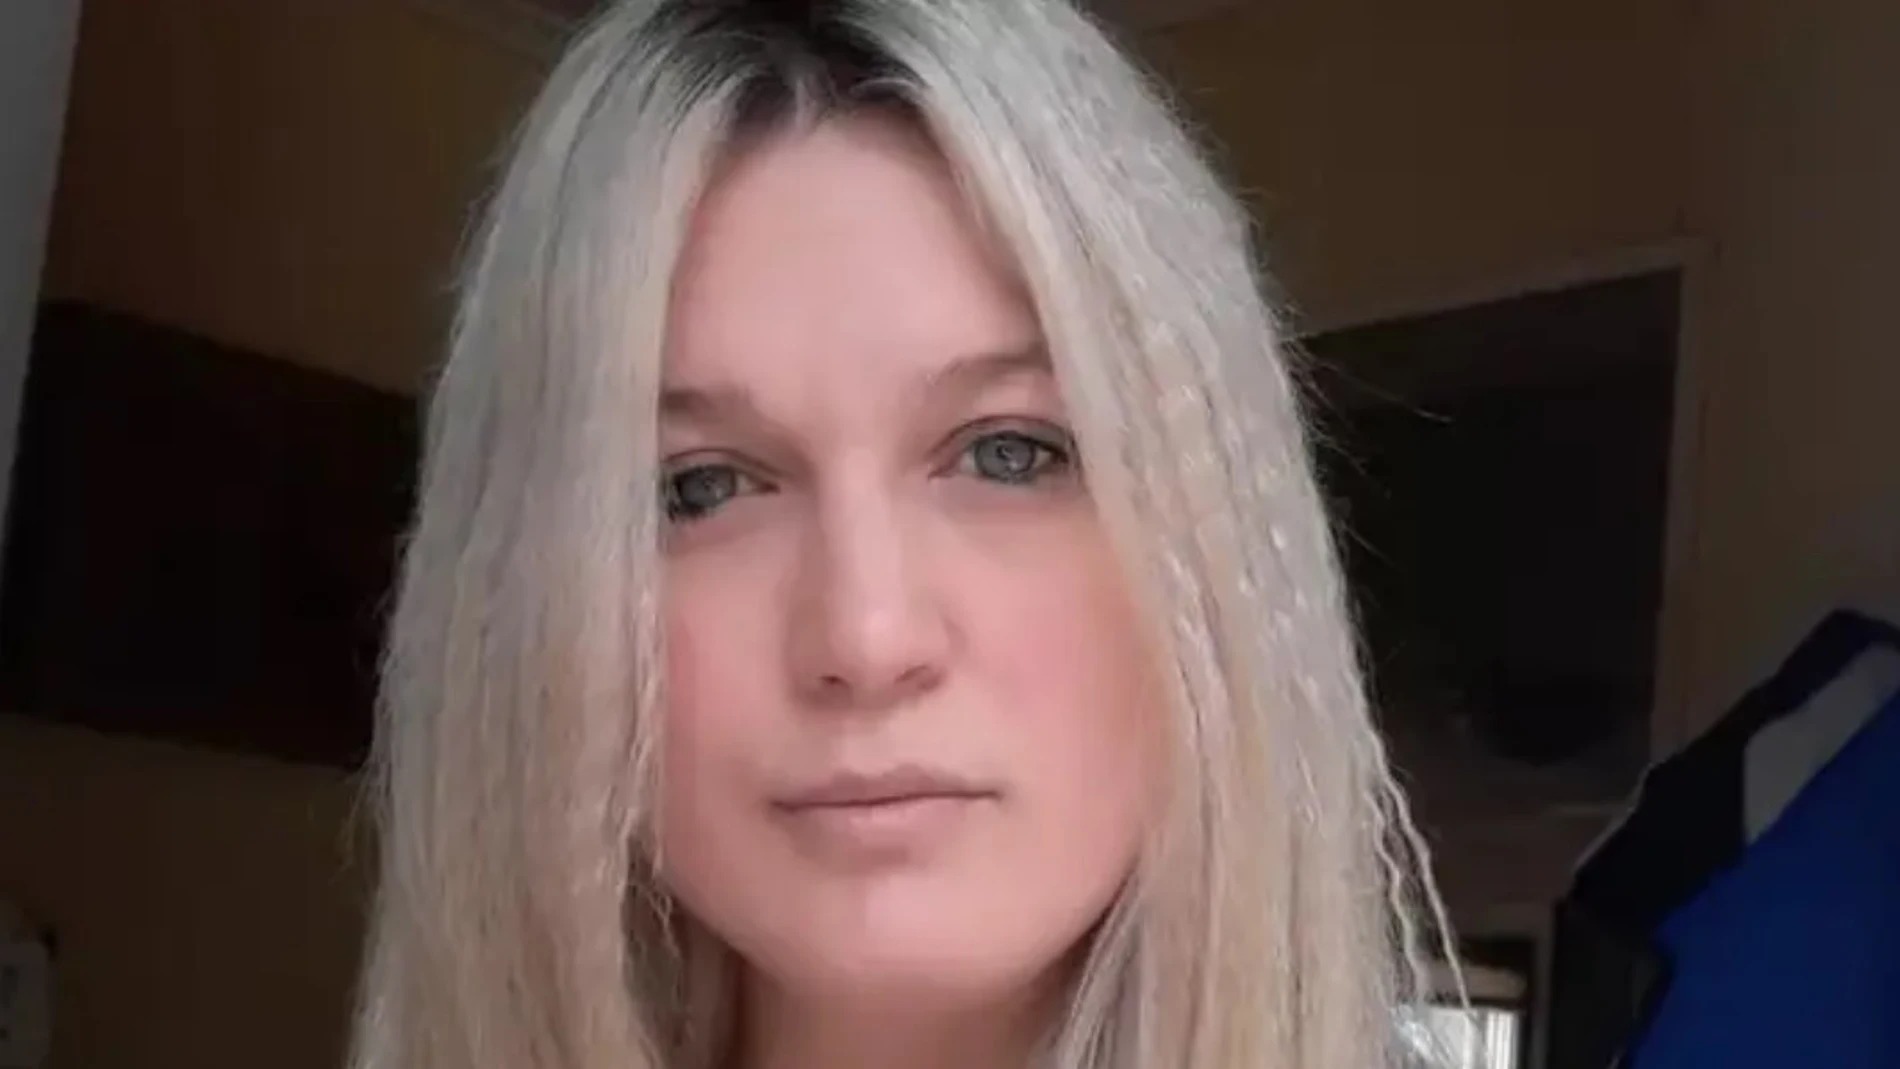 Muere "inesperadamente" la tiktoker Candice Murley tras publicar un inquietante vídeo